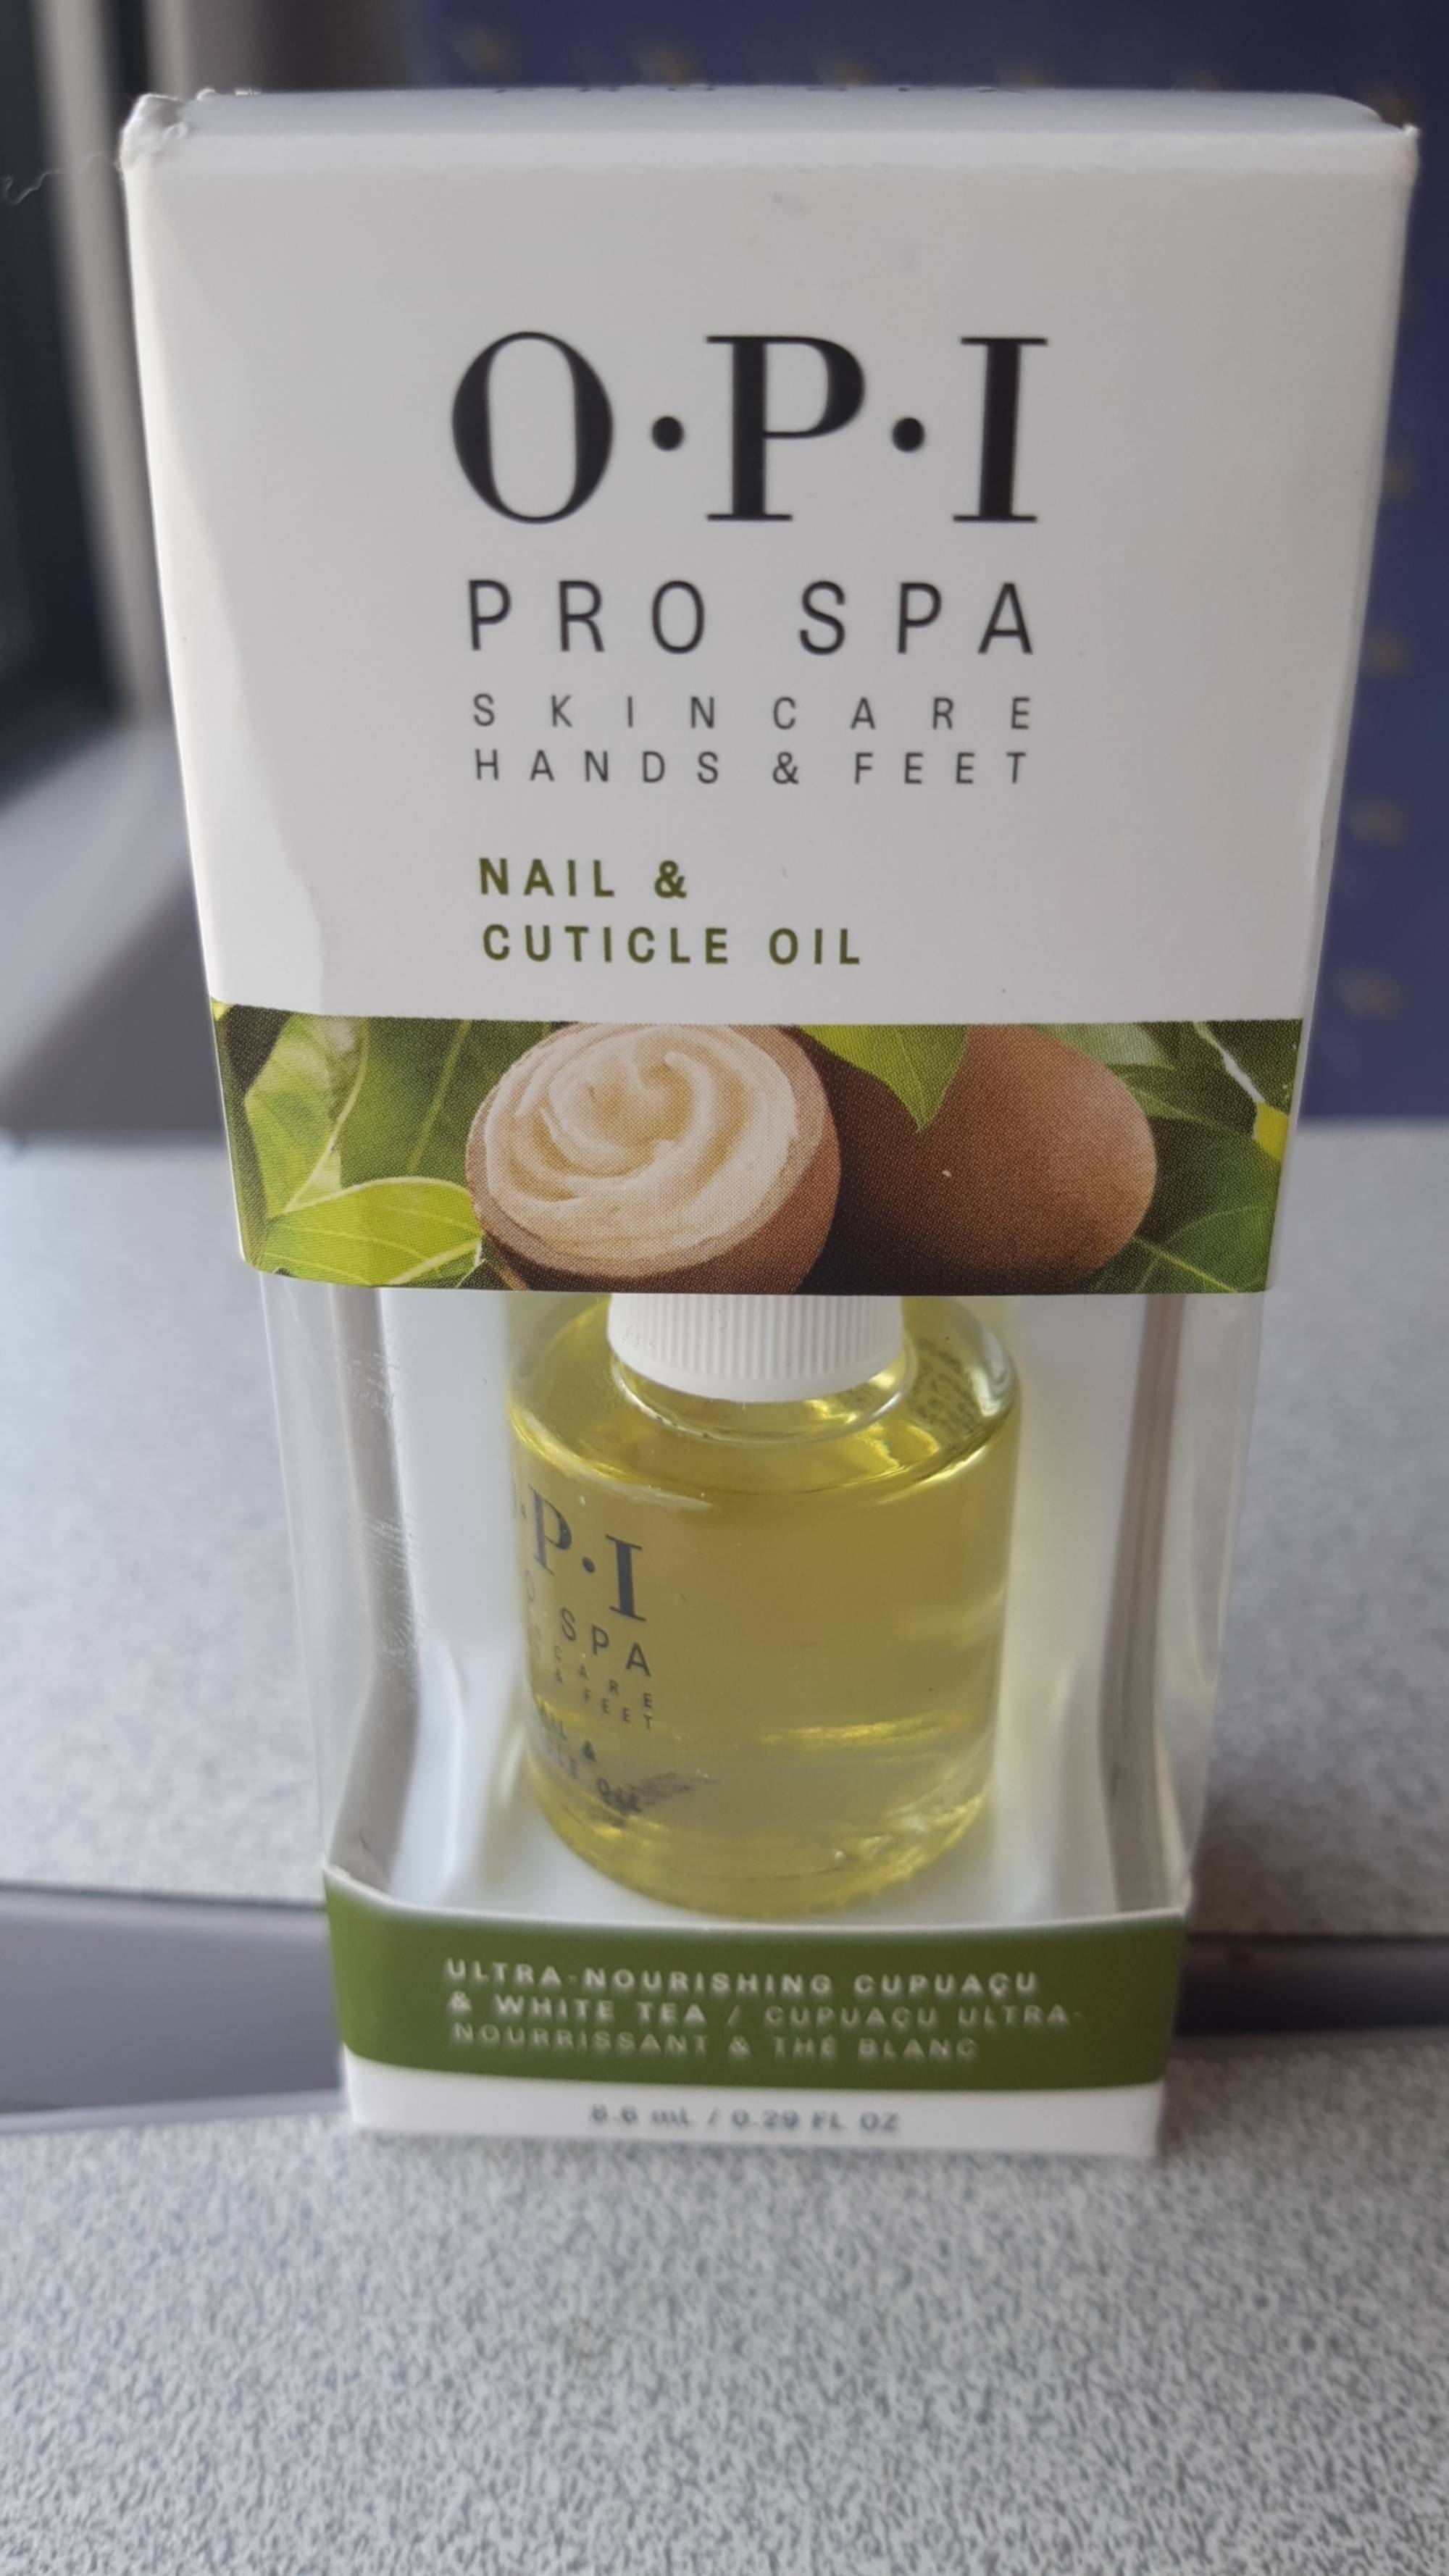 O.P.I - Pro spa - Nail & cuticle oil